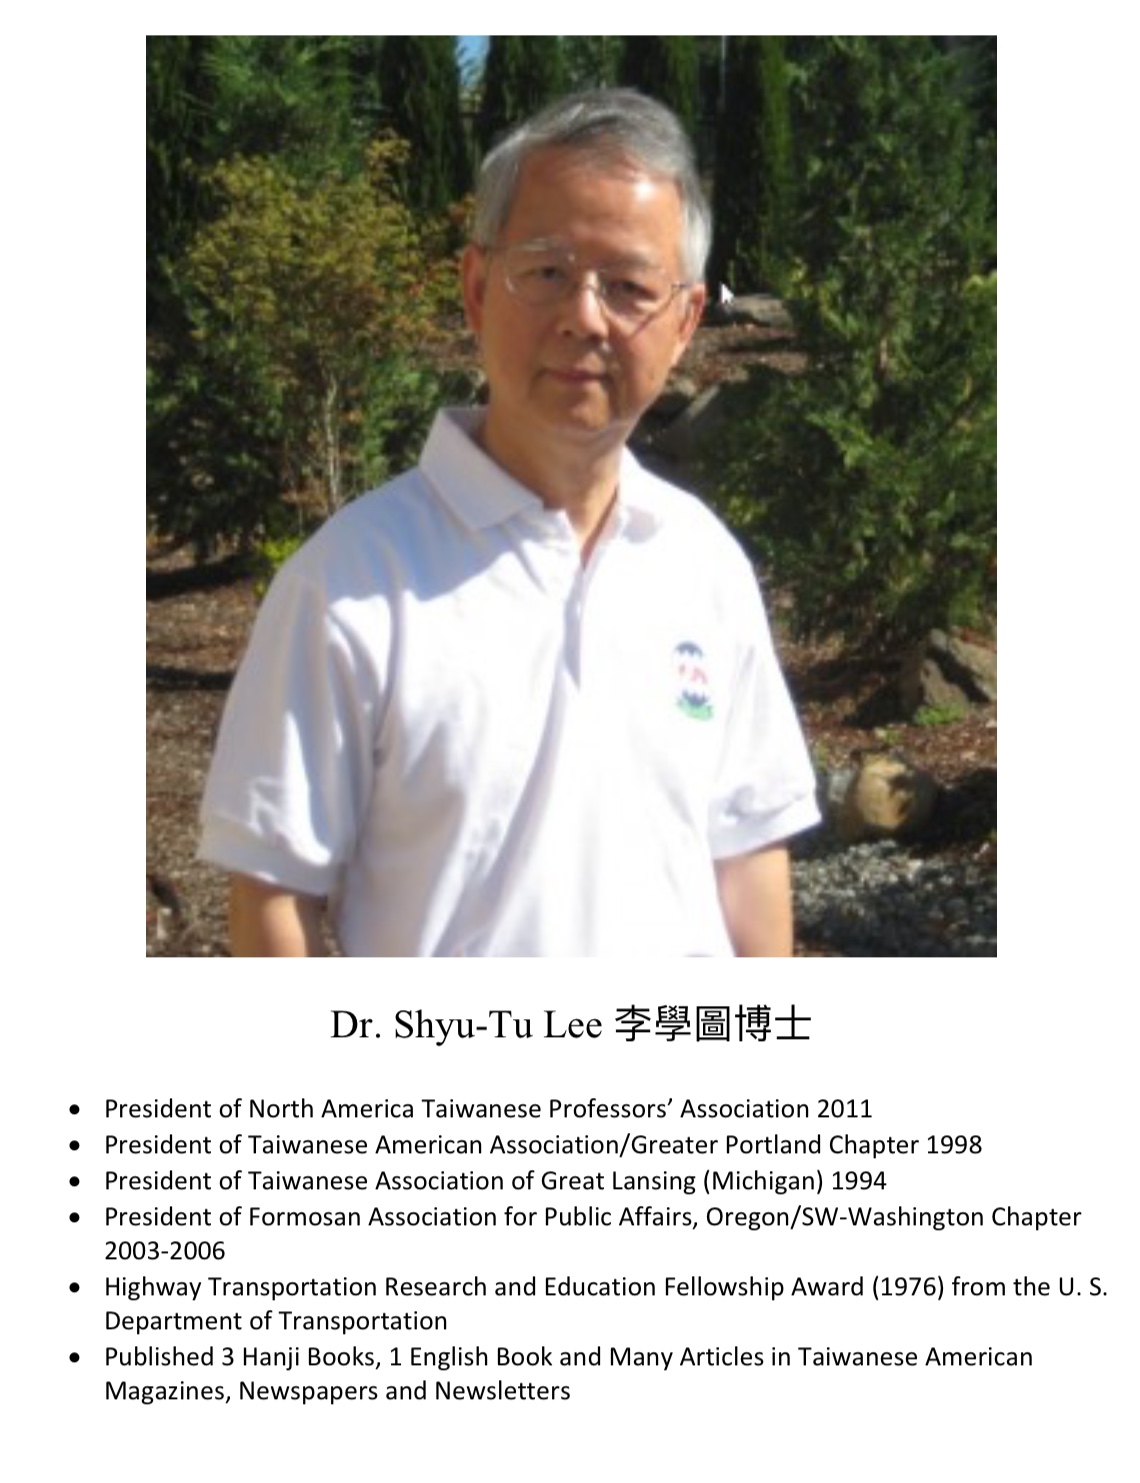 281. Dr. Shyu-Tu Lee 李學圖博士